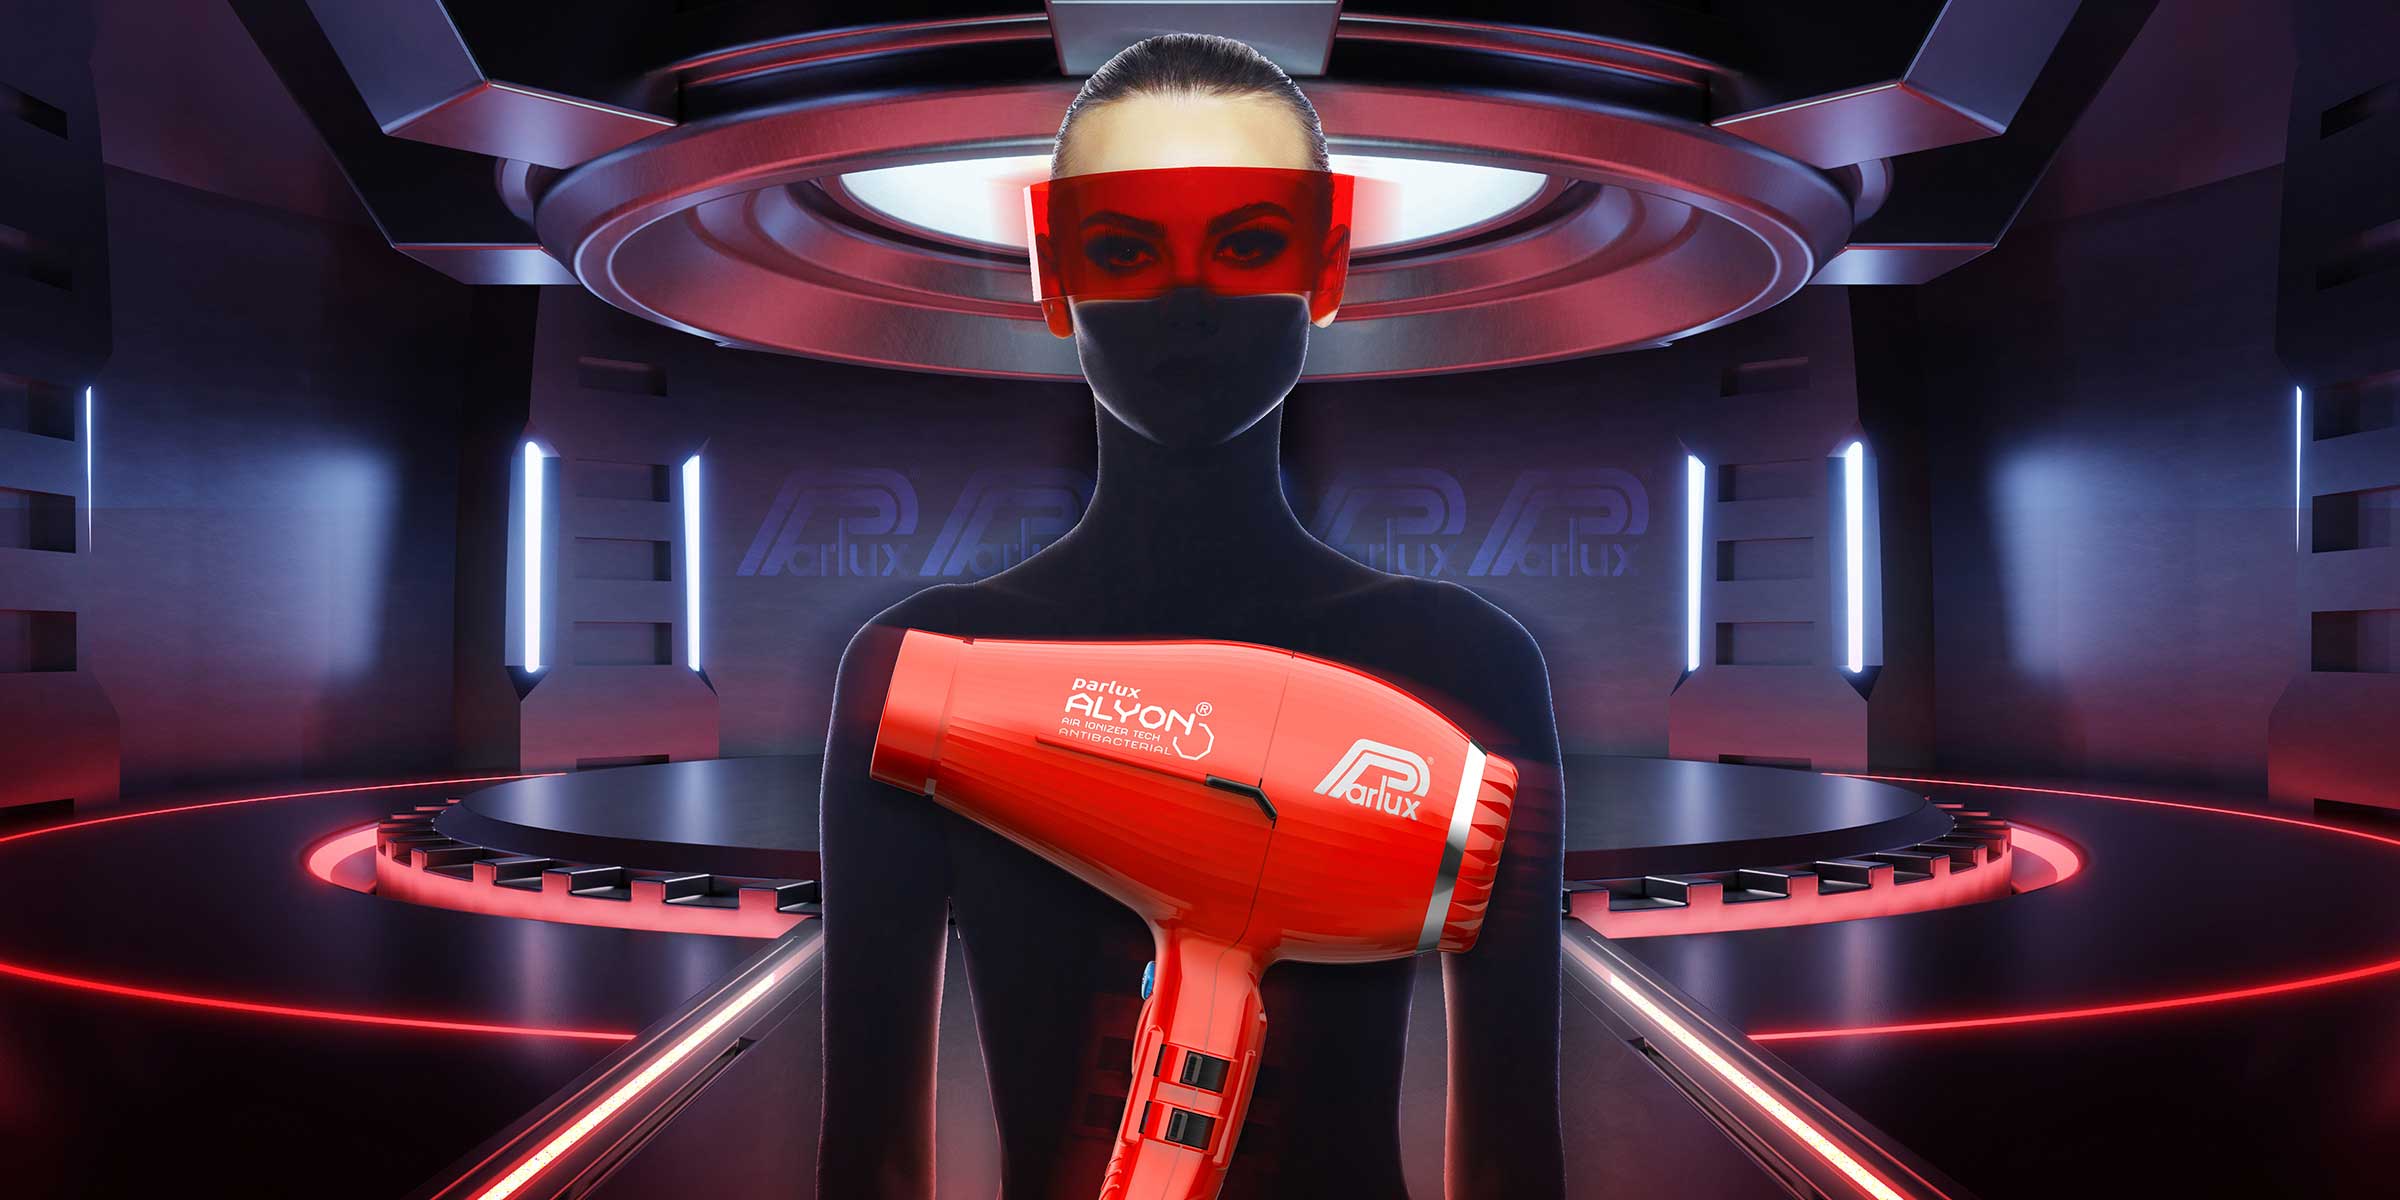 Parlux Alyon Air Ionizer Tech Hairdryer